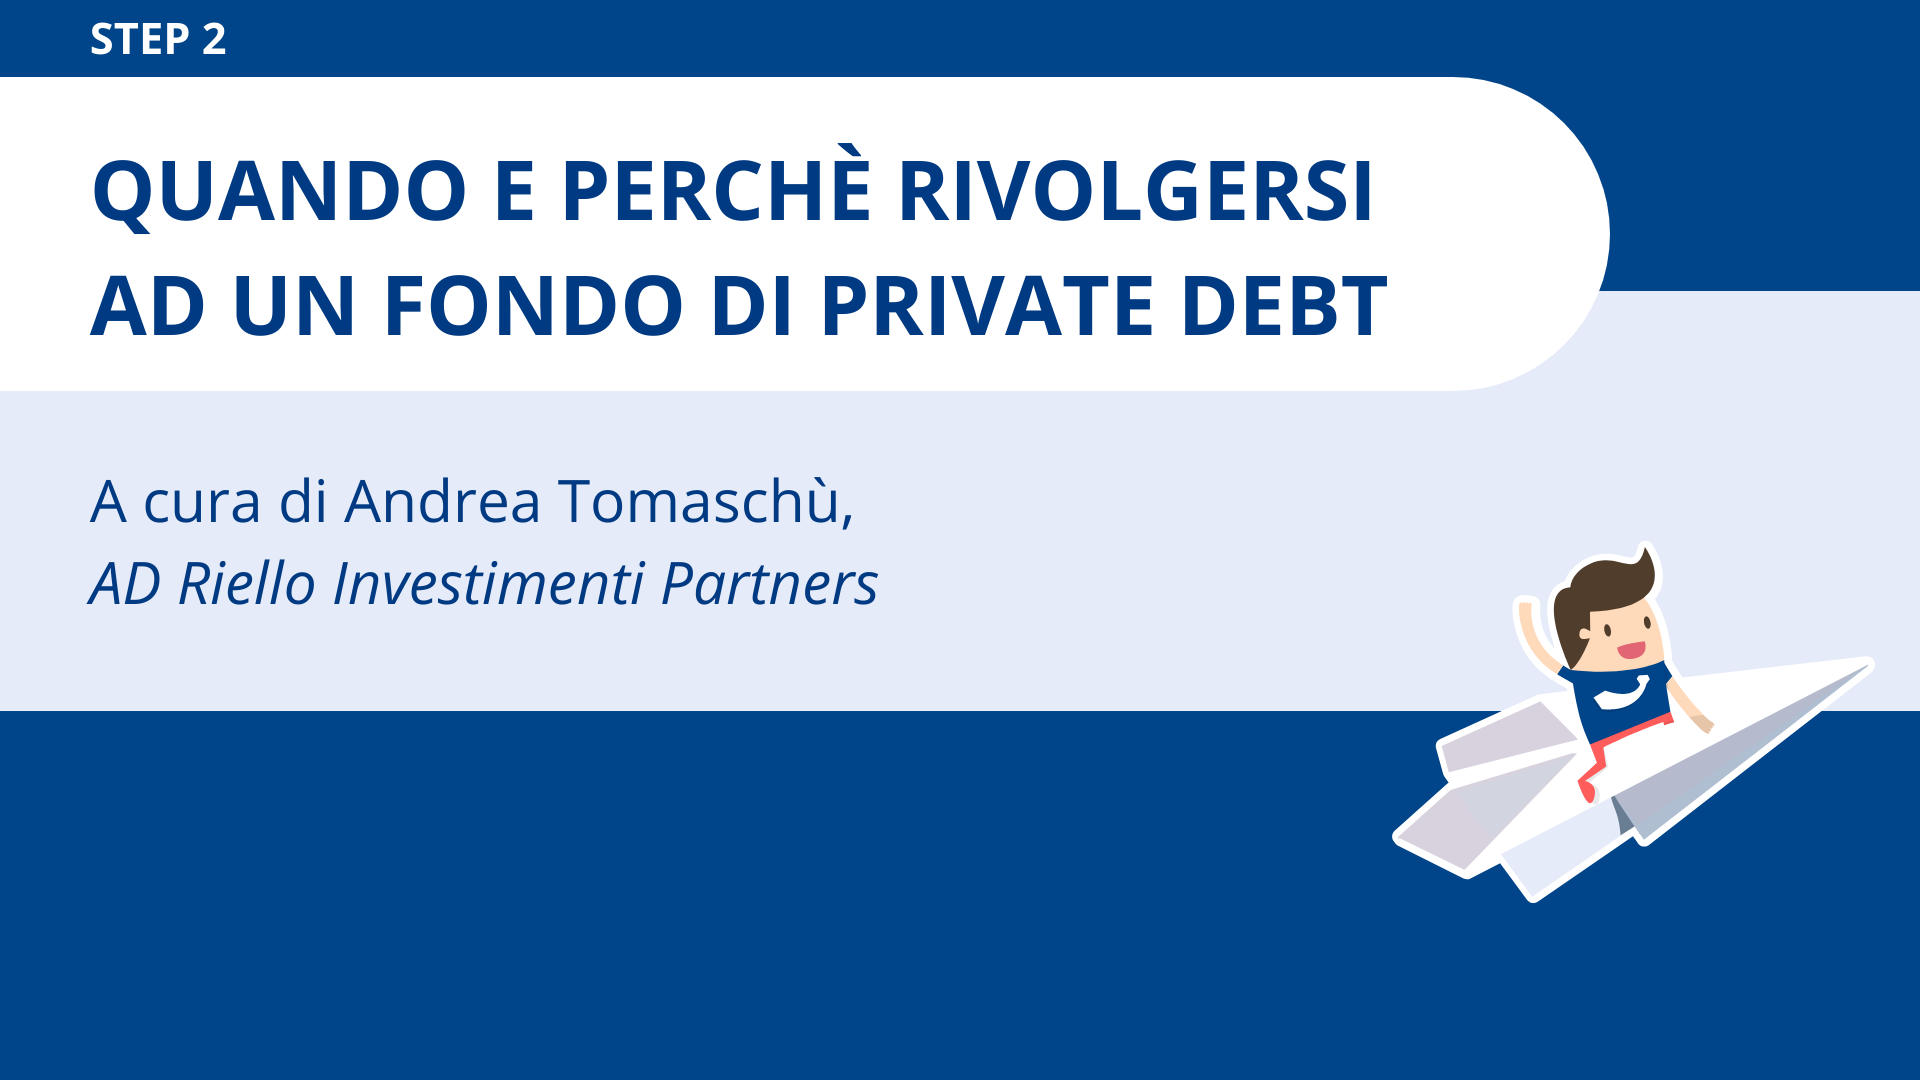  Quando e perché rivolgersi ad un fondo di private debt<br>Andrea Tomaschù - Riello Investimenti Partners